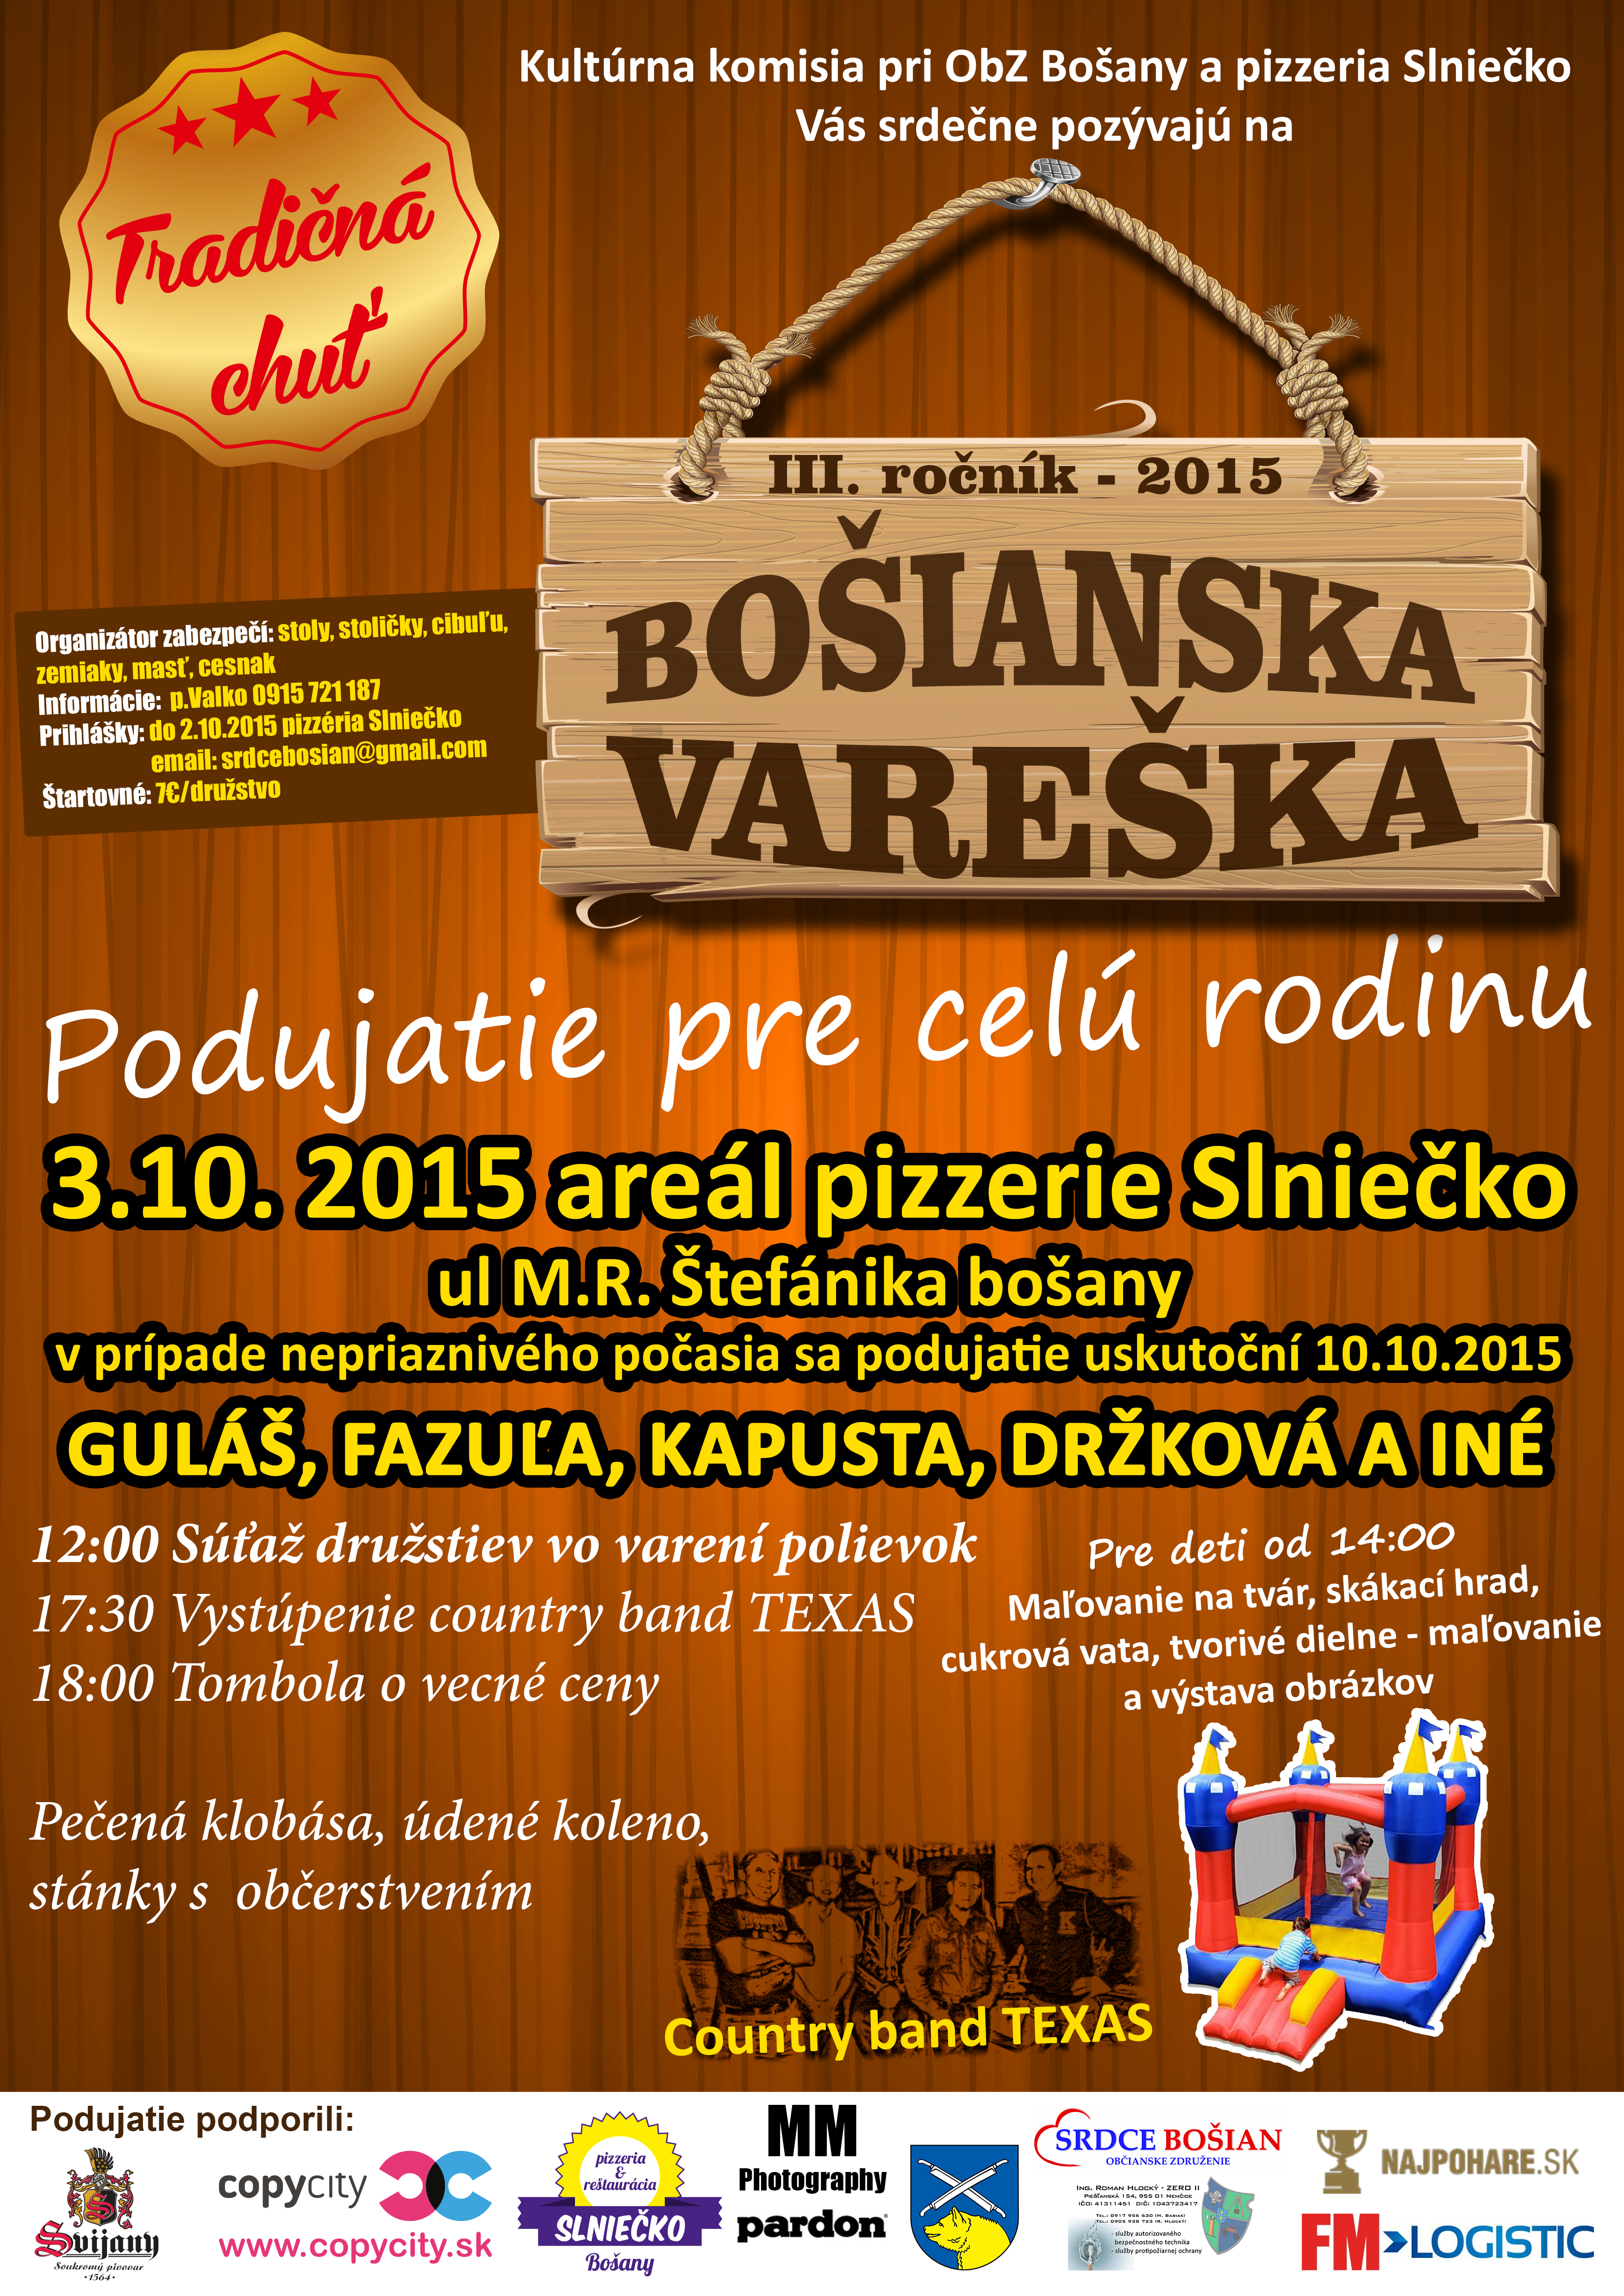 Bošianska vareška 2015 - 3. ročník